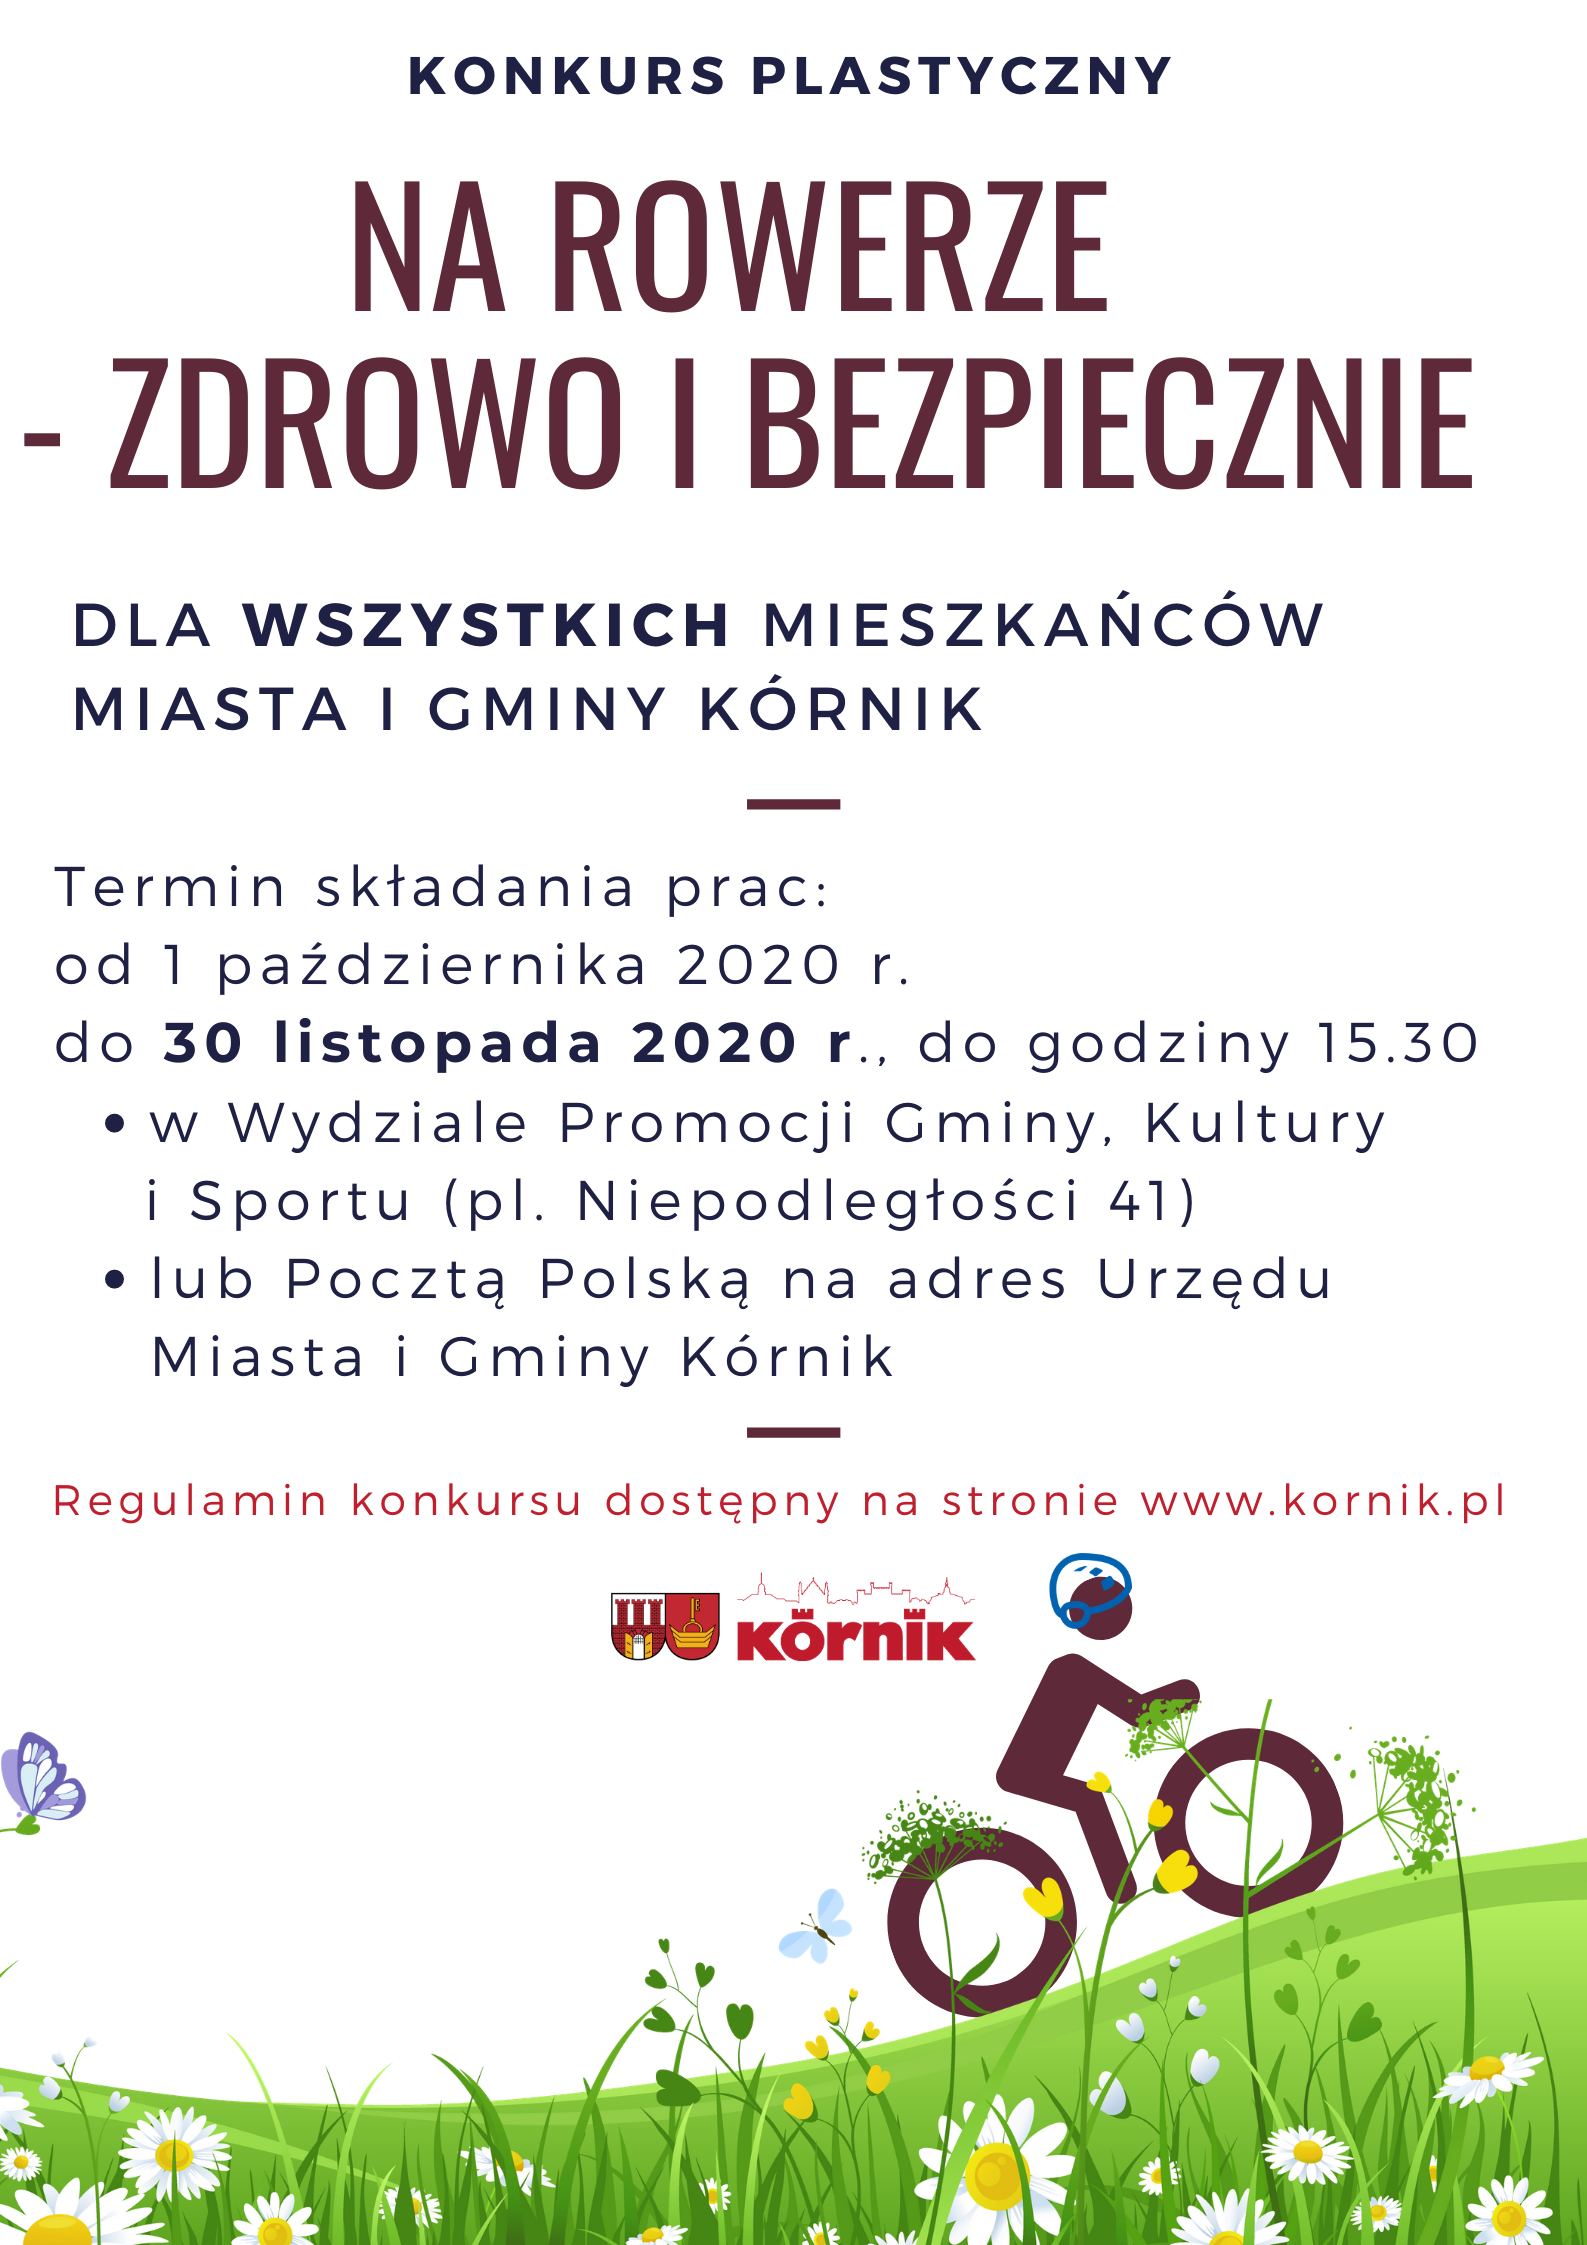 Plakat konkursu "Na rowerze- zdrowo i bezpiecznie". Podstawowe informacje takie jak w treści ogłoszenia. Grafika to rowerzysta w kasku na łące.